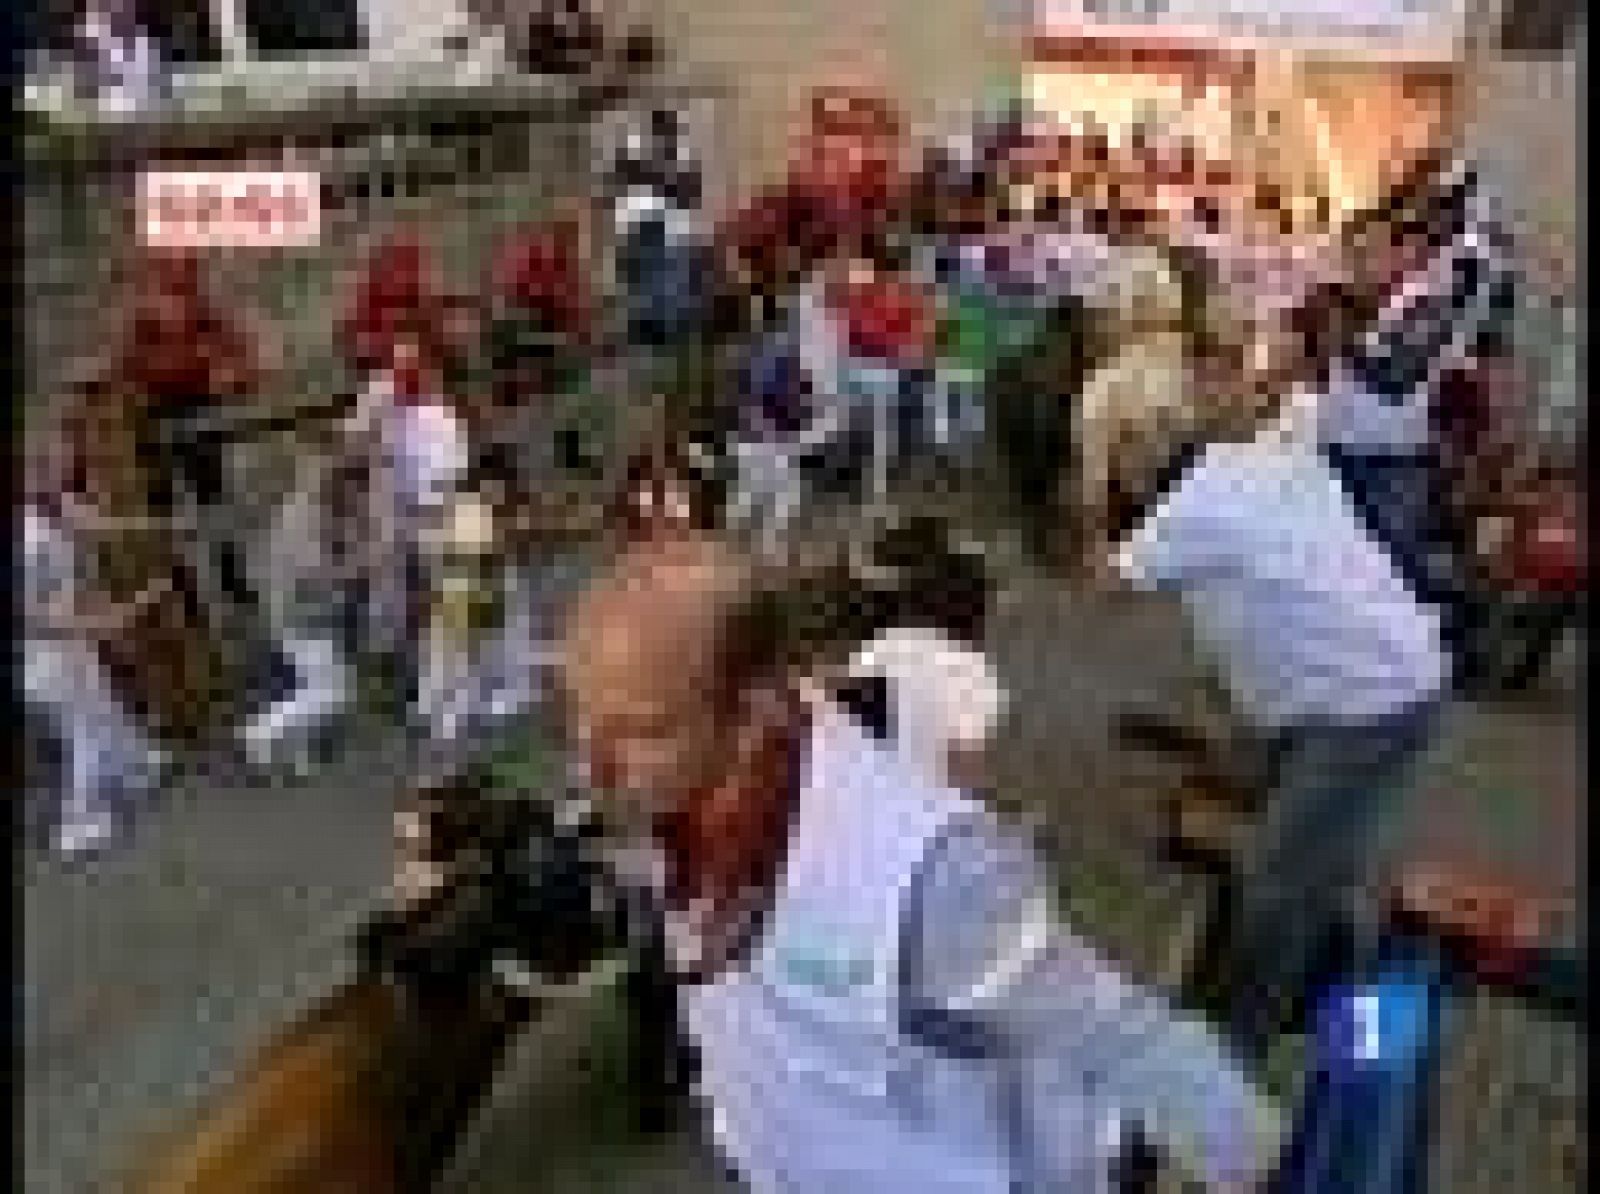  Encierro limpio el primero de estas fiestas de San Fermín 2009, donde seis astados de Alcurrucén sólo han causado cuatro heridos por contusiones en un encierro con mucha afluencia de público. (7/7/09)